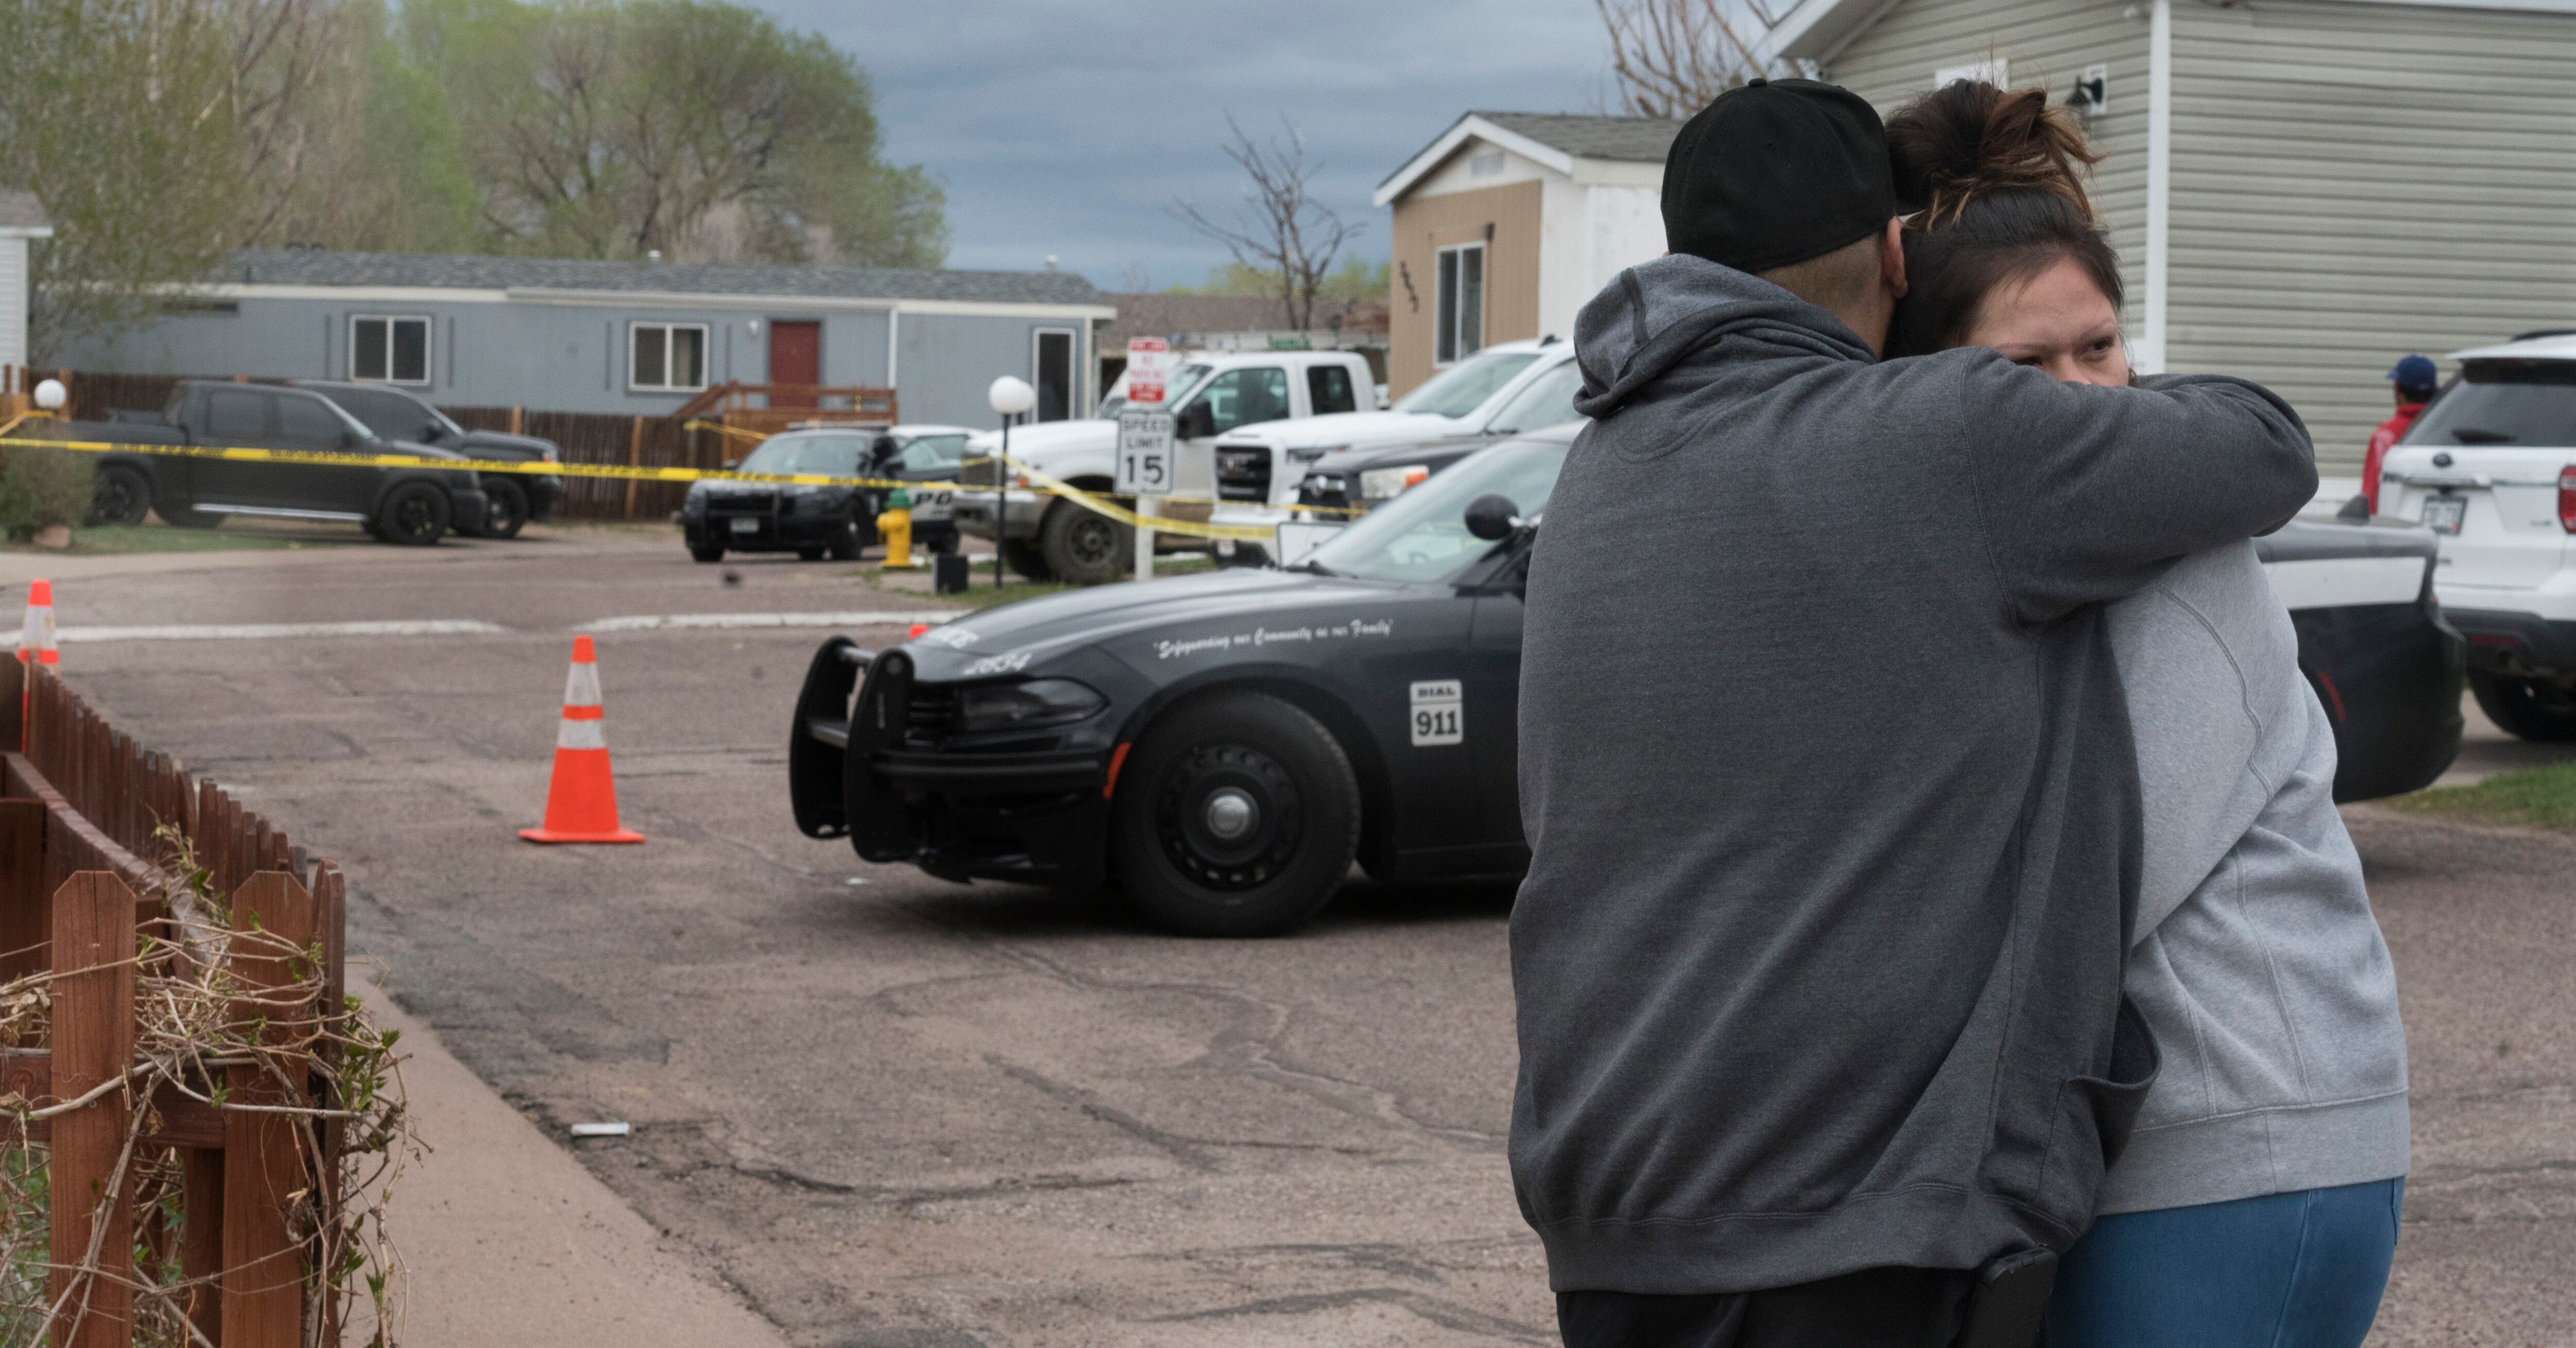 Familiares y amigos de las víctimas que murieron en un tiroteo, consuelan a cada uno en la calle de la escena en Colorado Springs.